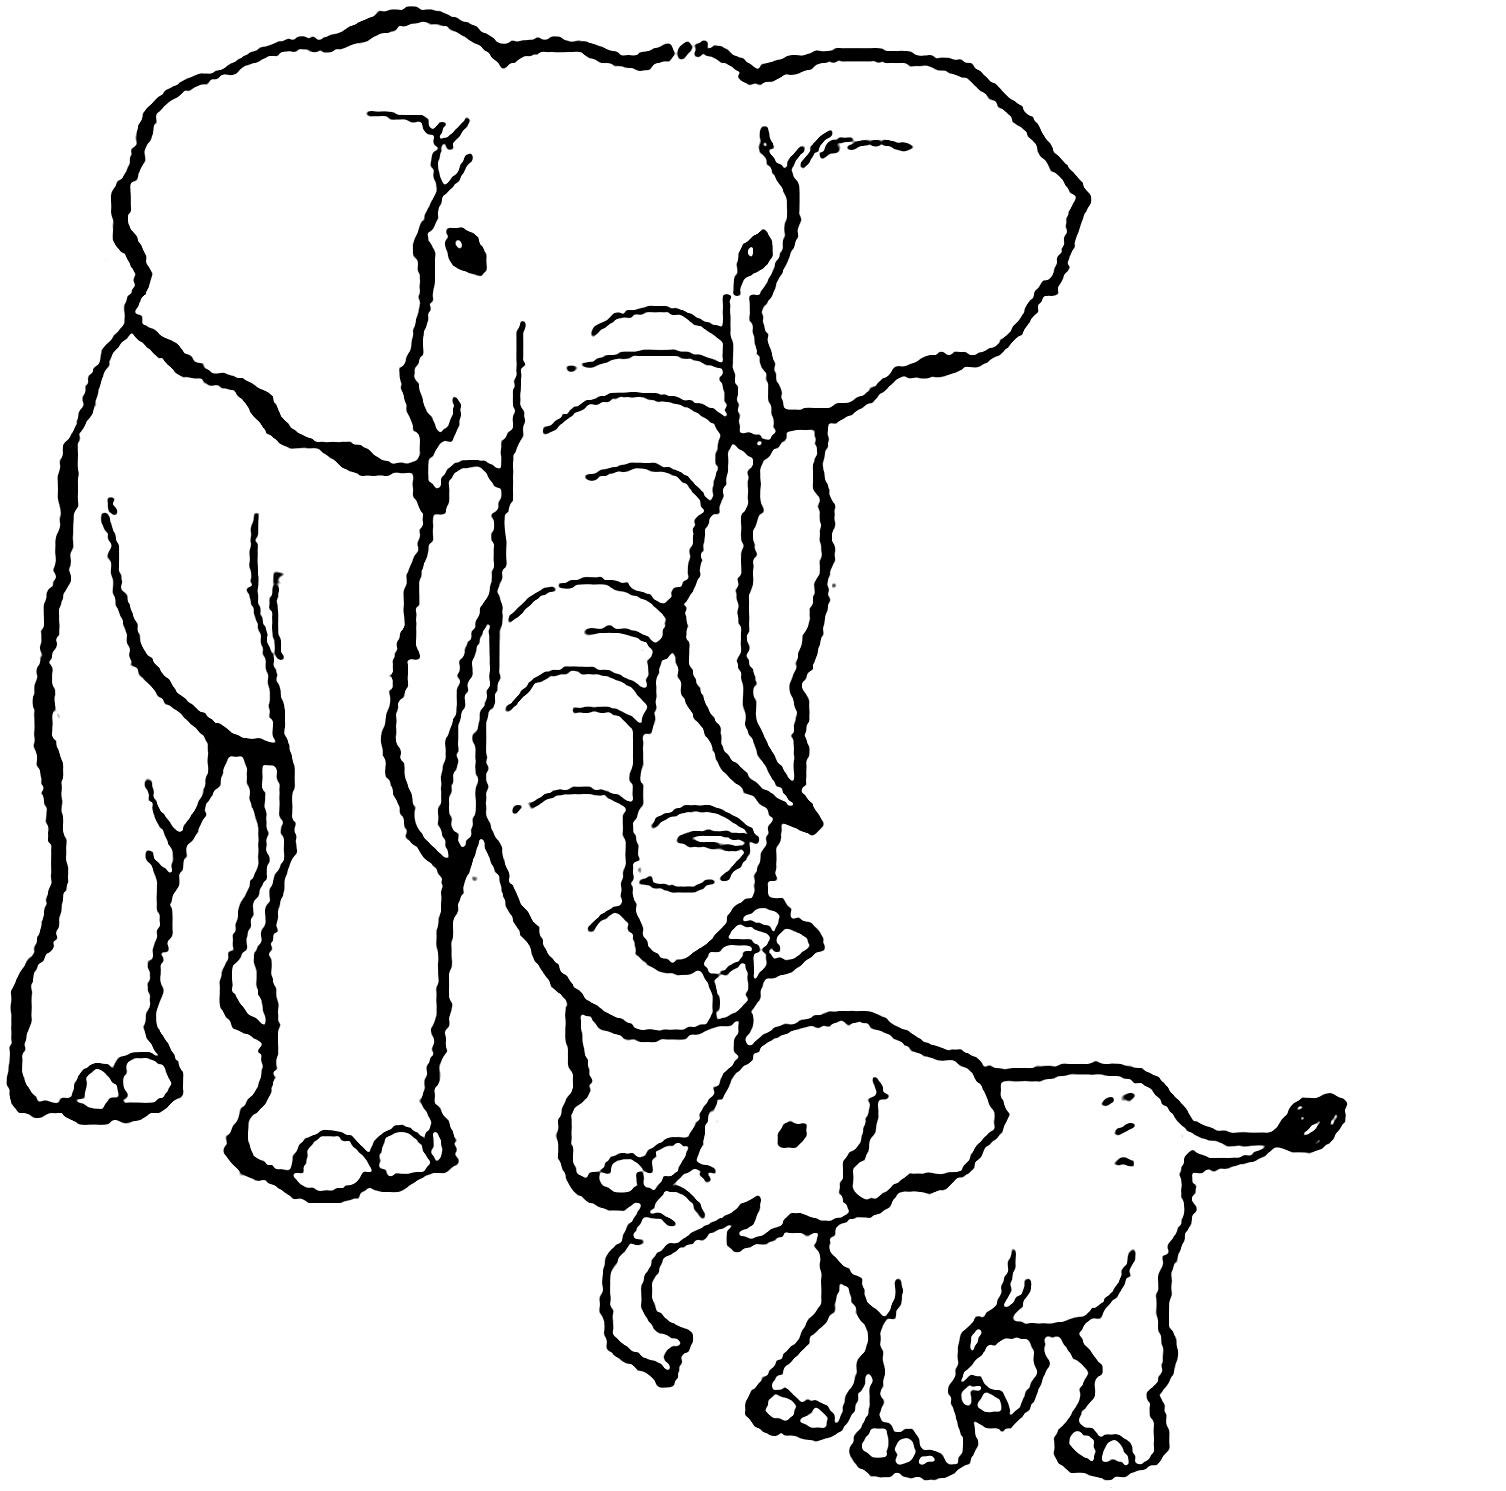 Image d'éléphant à télécharger et imprimer pour enfants